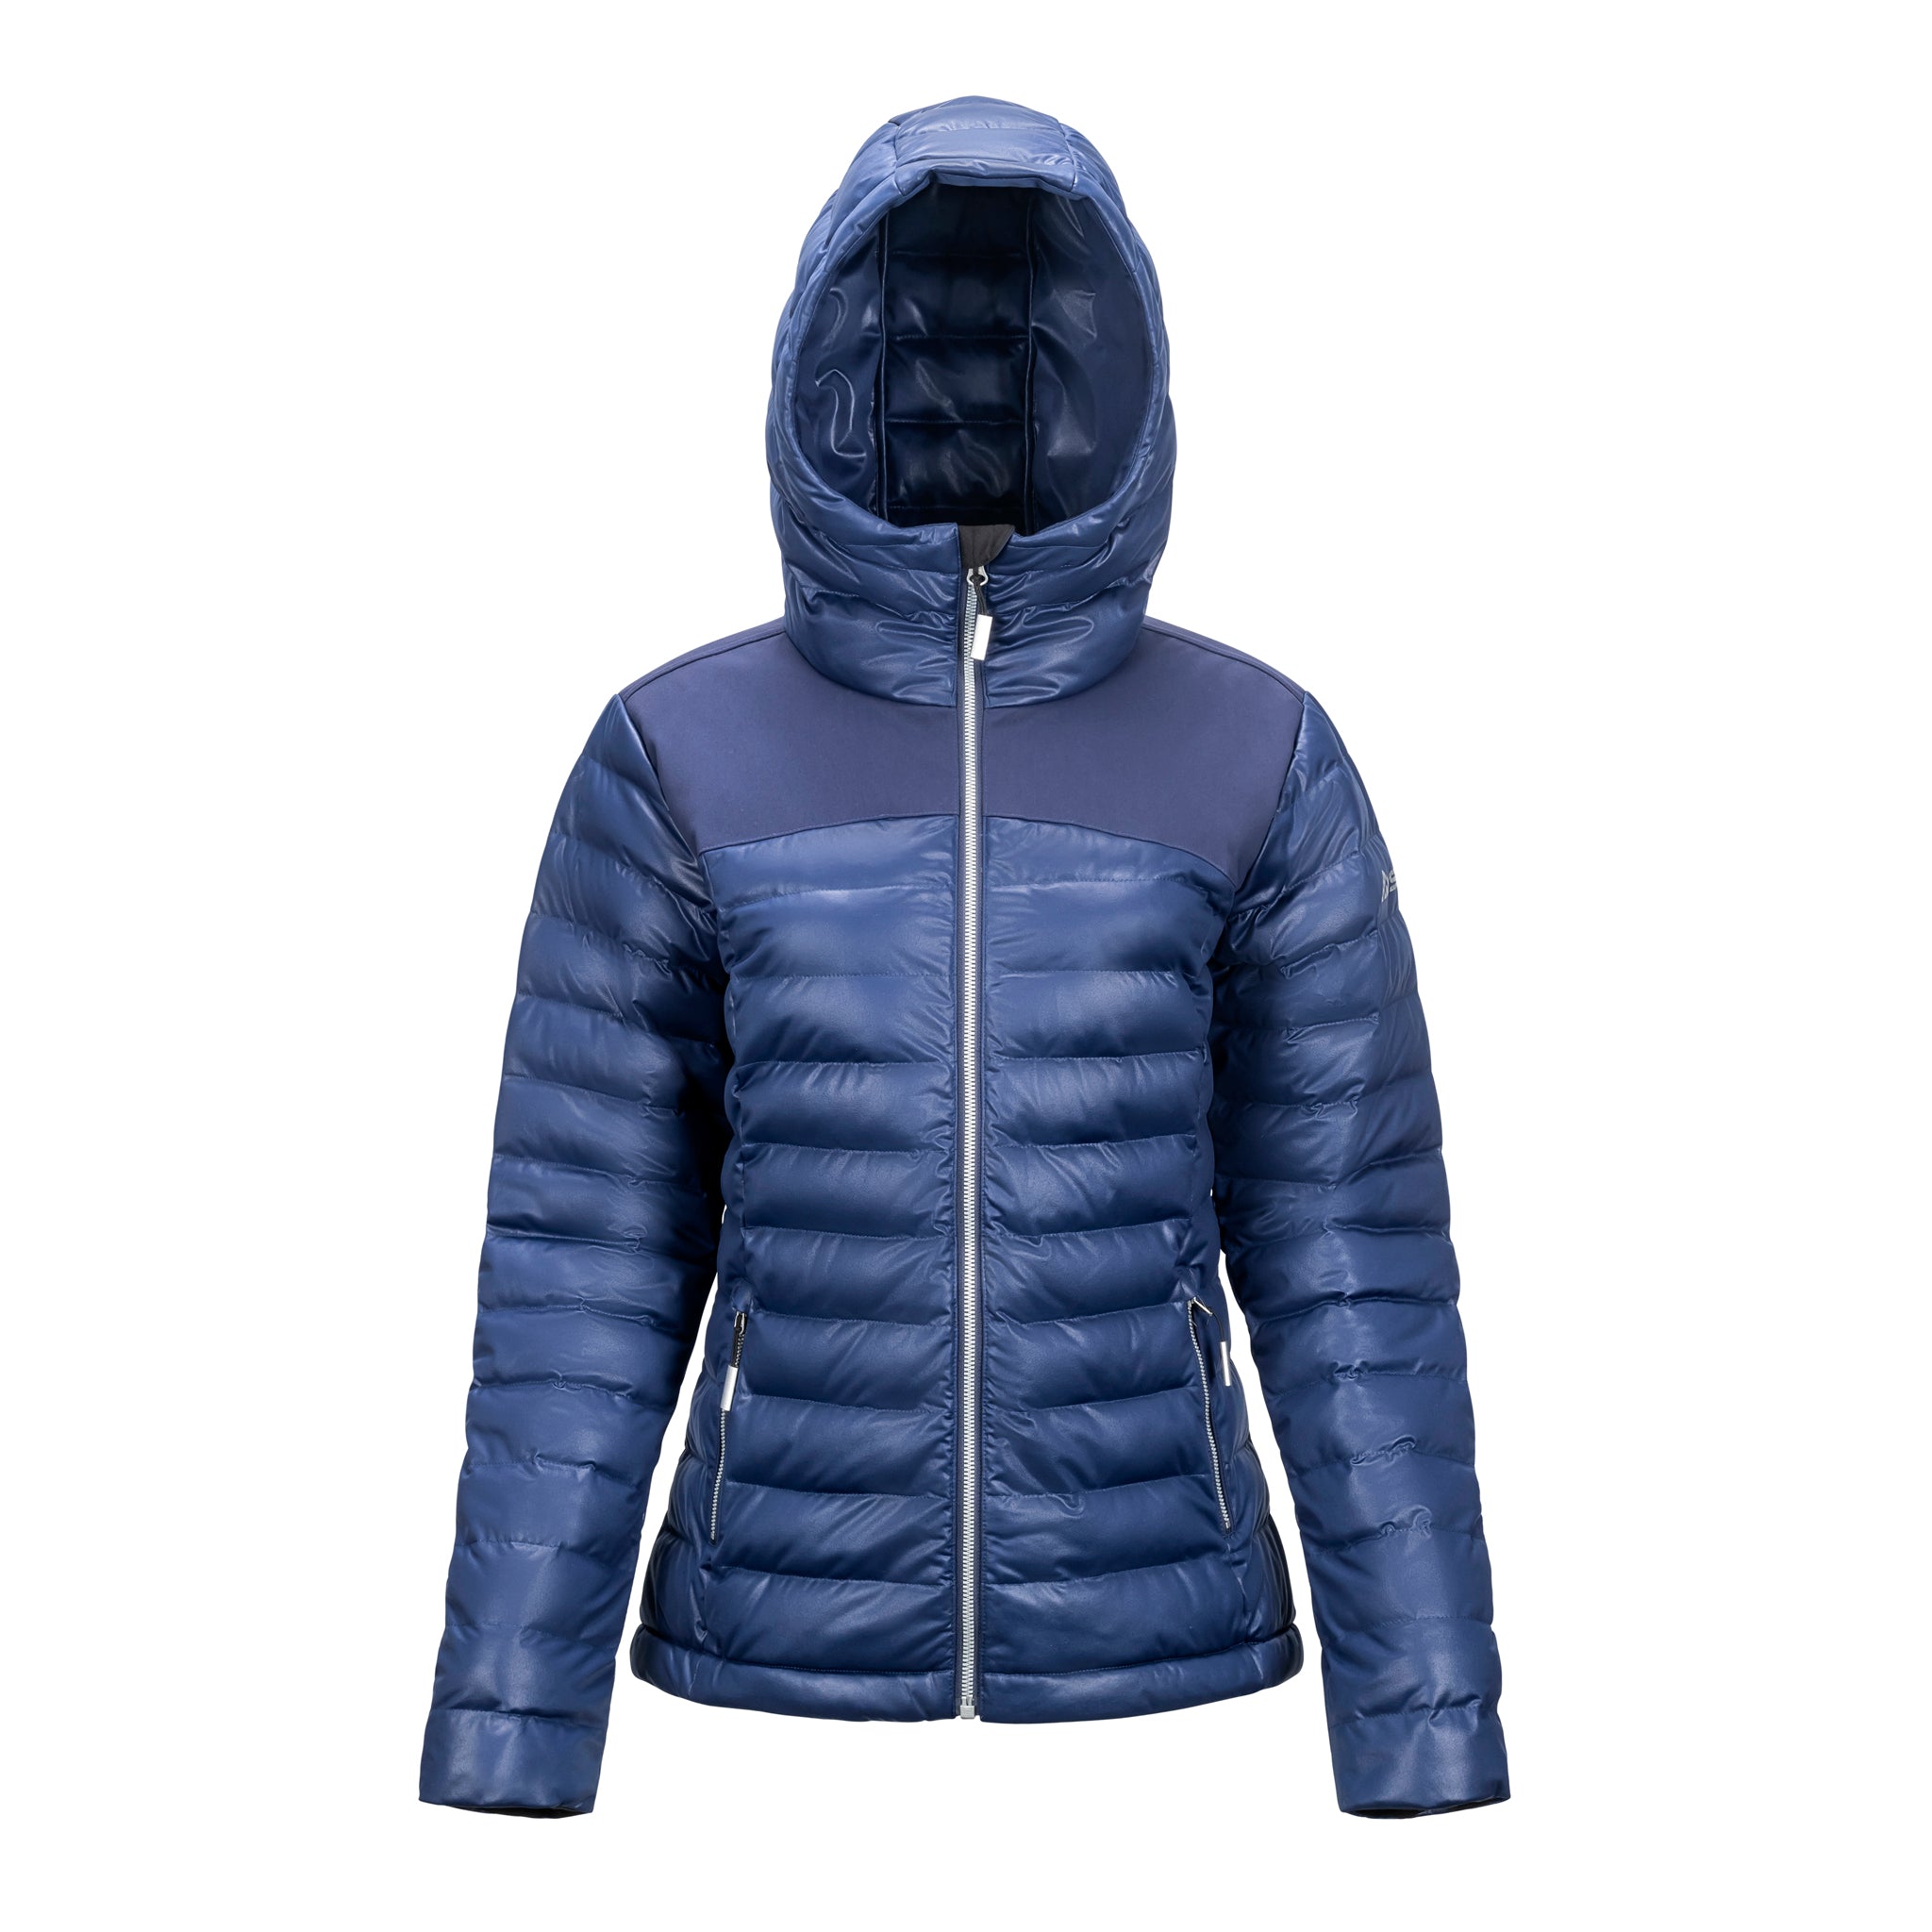 Women's Stretch Puffy Jacket, Insulated Ski Jacket